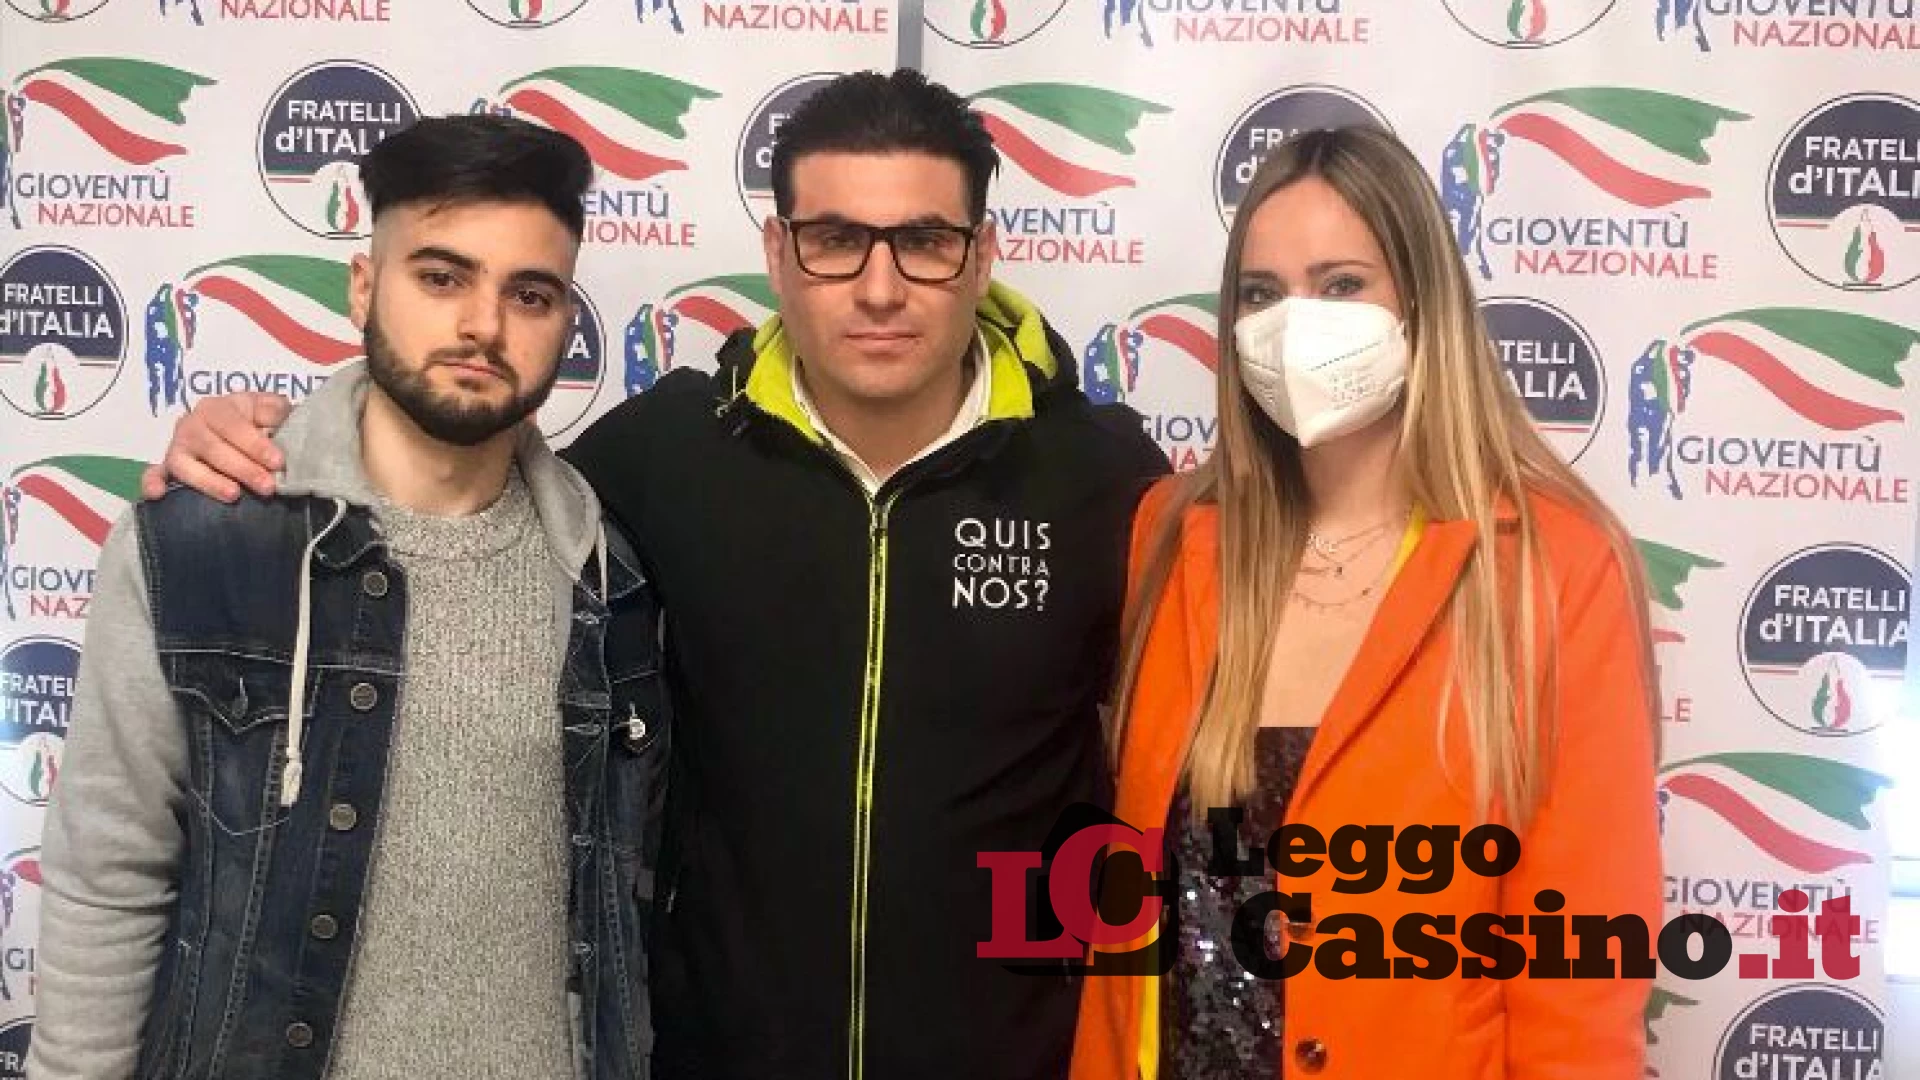 Alessandro Di Sano new entry in Gioventù Nazionale di Cassino